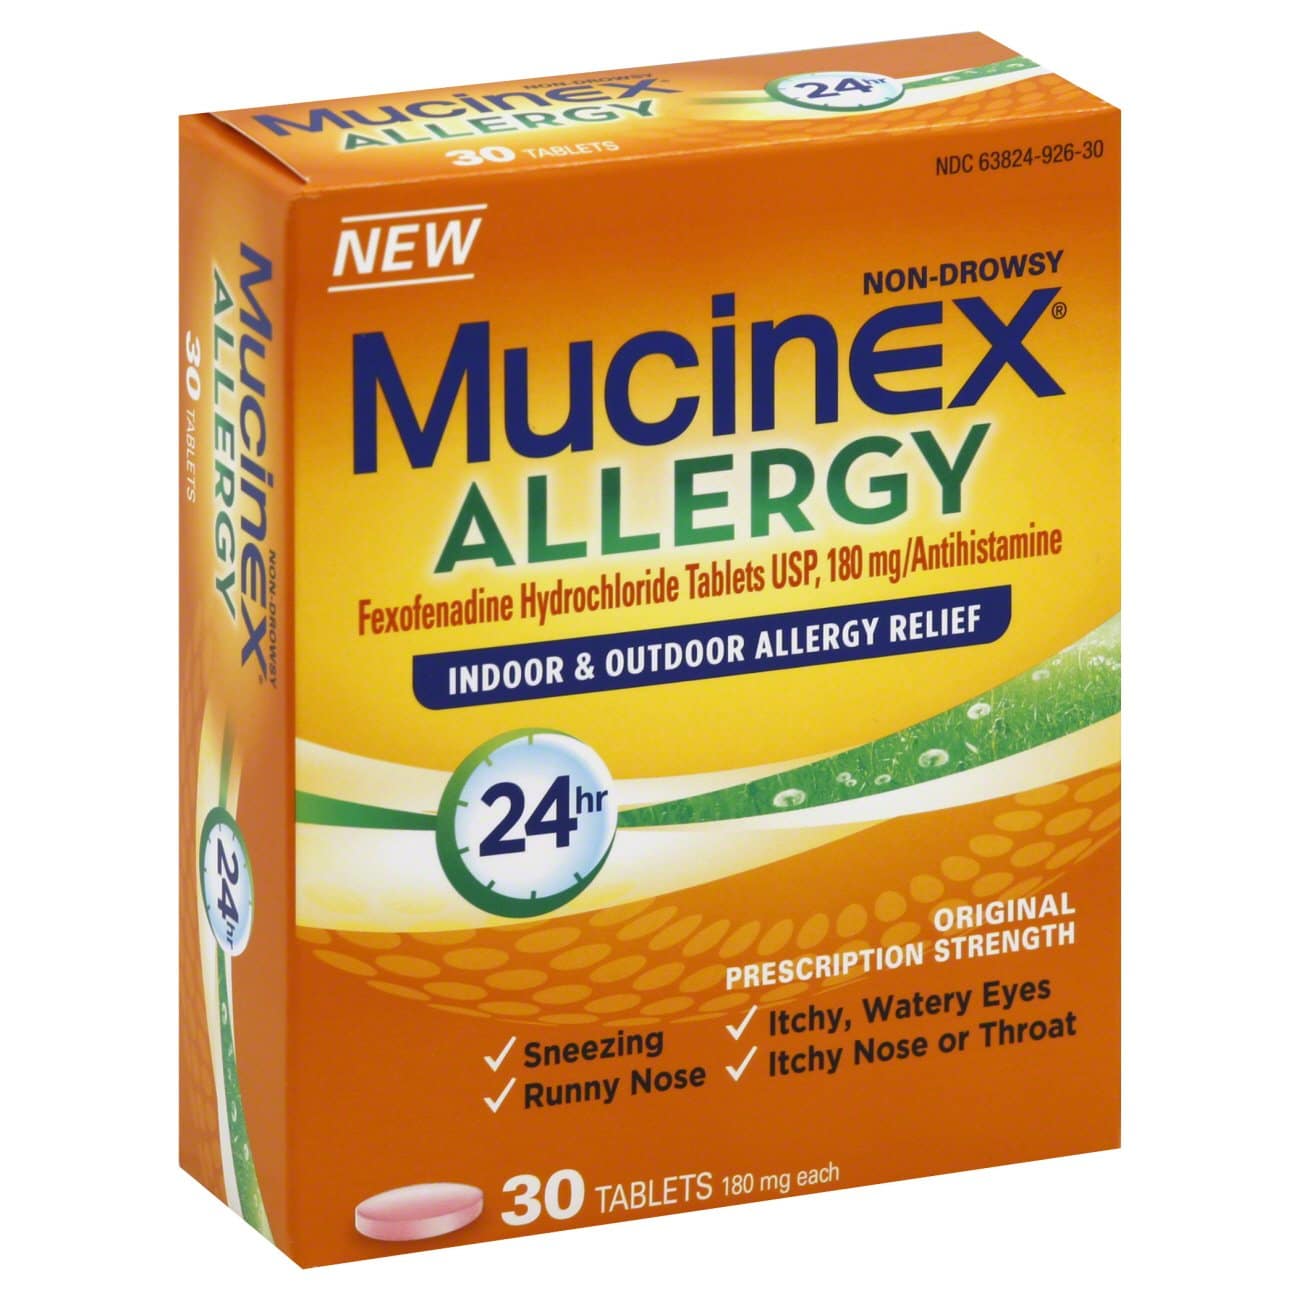 Mucinex Allergy 24 Hour Indoor &  Outdoor Allergy Relief Fexofenadine ...